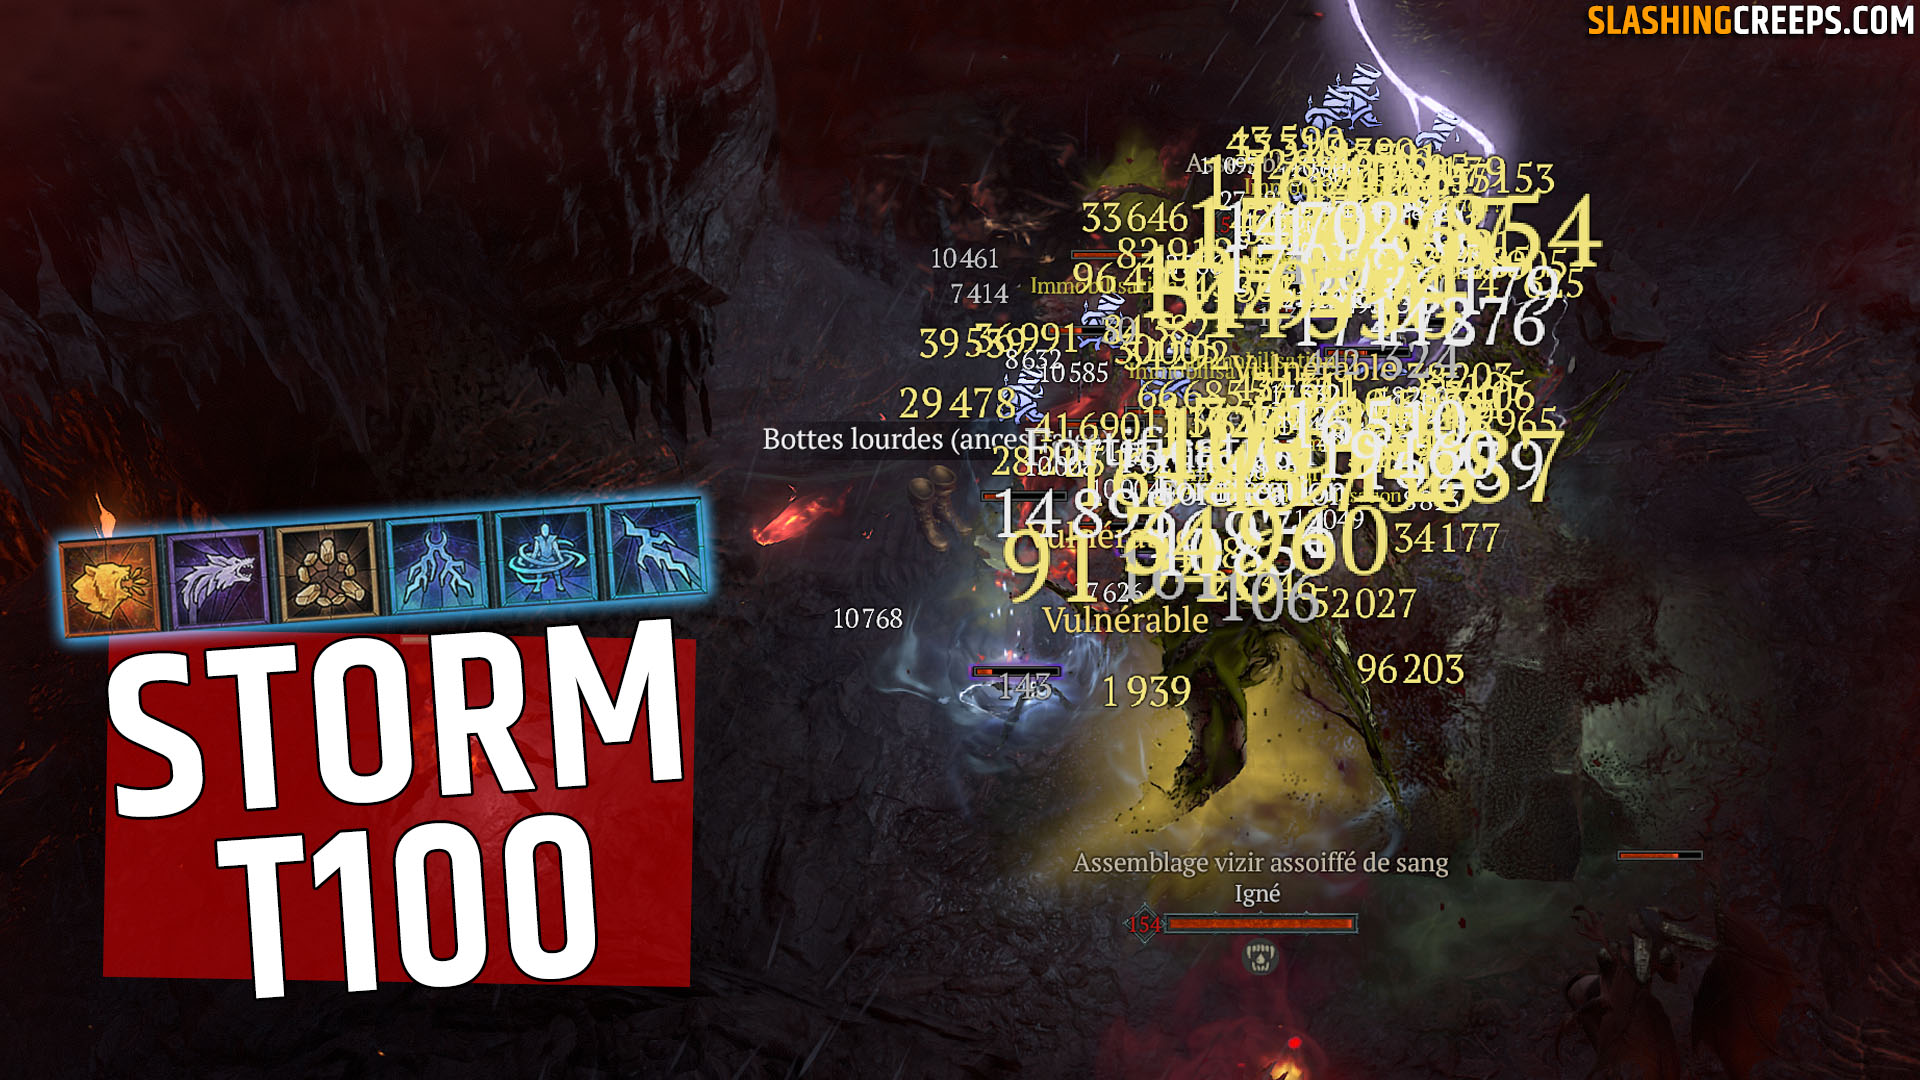 Le meilleur build Druide saison 3 Diablo IV ! Pour profiter des buffs d'orage et détruire vos ennemis en T100 sur la saison assemblage !